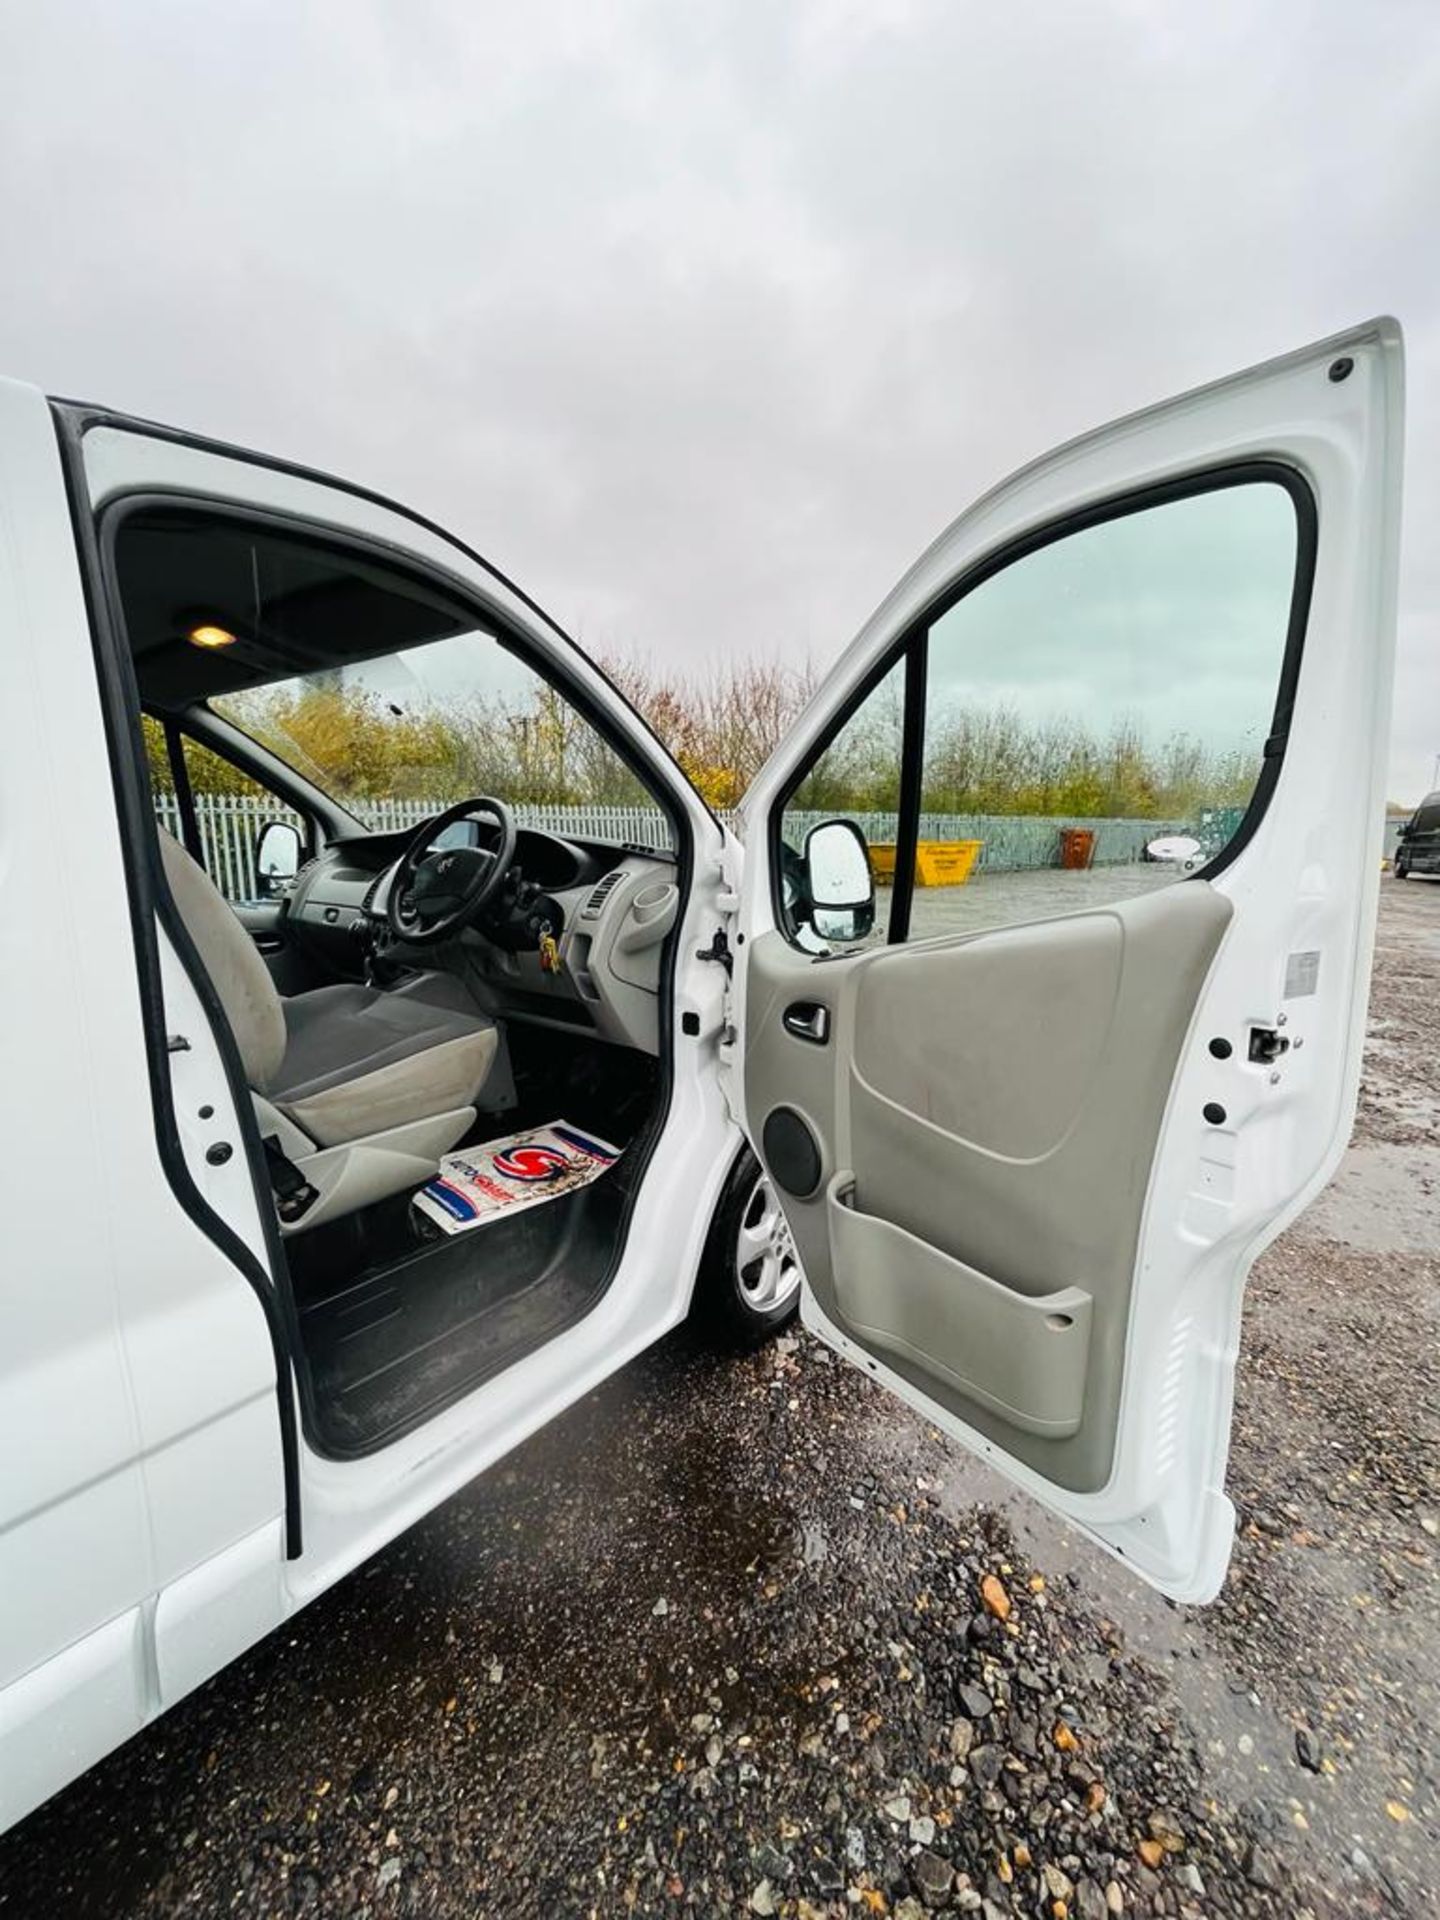 ** ON SALE ** Vauxhall Vivaro 2.0 CDTI 115 Sportive LWB 2012 '12 Reg' Sat Nav - A/C - Panel Van - Image 20 of 25